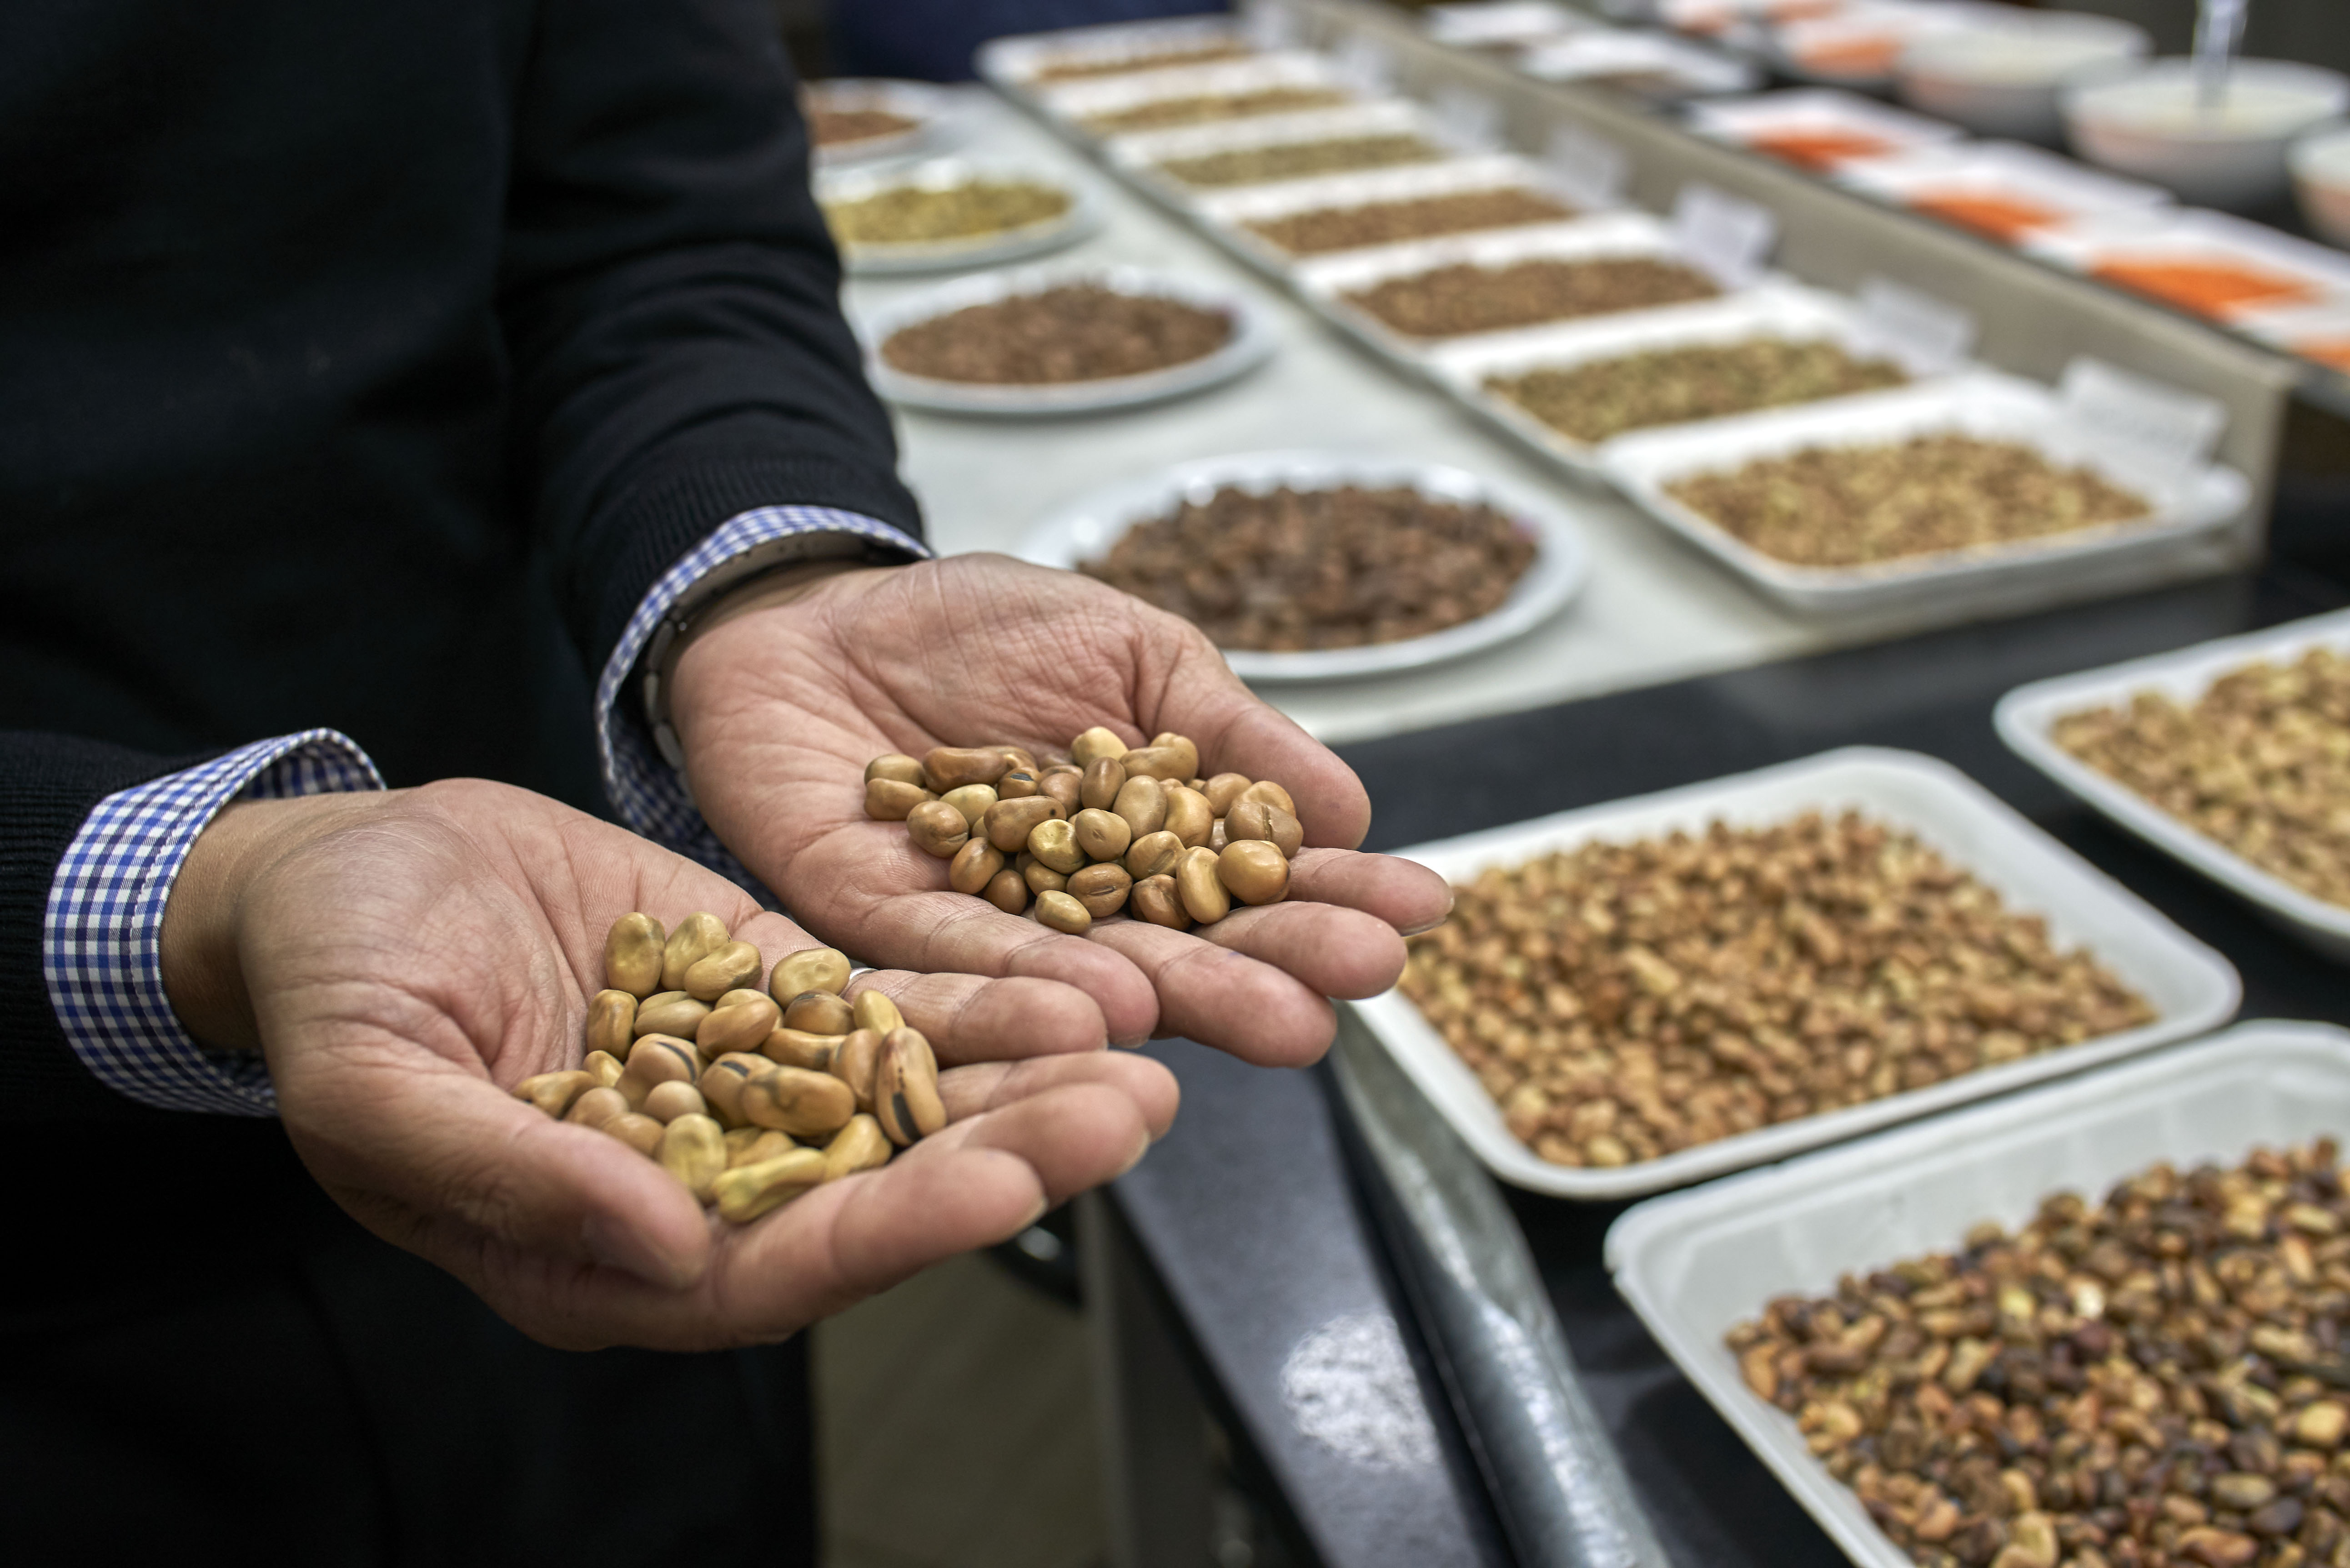 Mufaddal Saifuddin, directeur de Habba Habba, montrant les différences entre les types de fèves importées, le 9 avril 2019 (MEE/Hamada Elrasam)